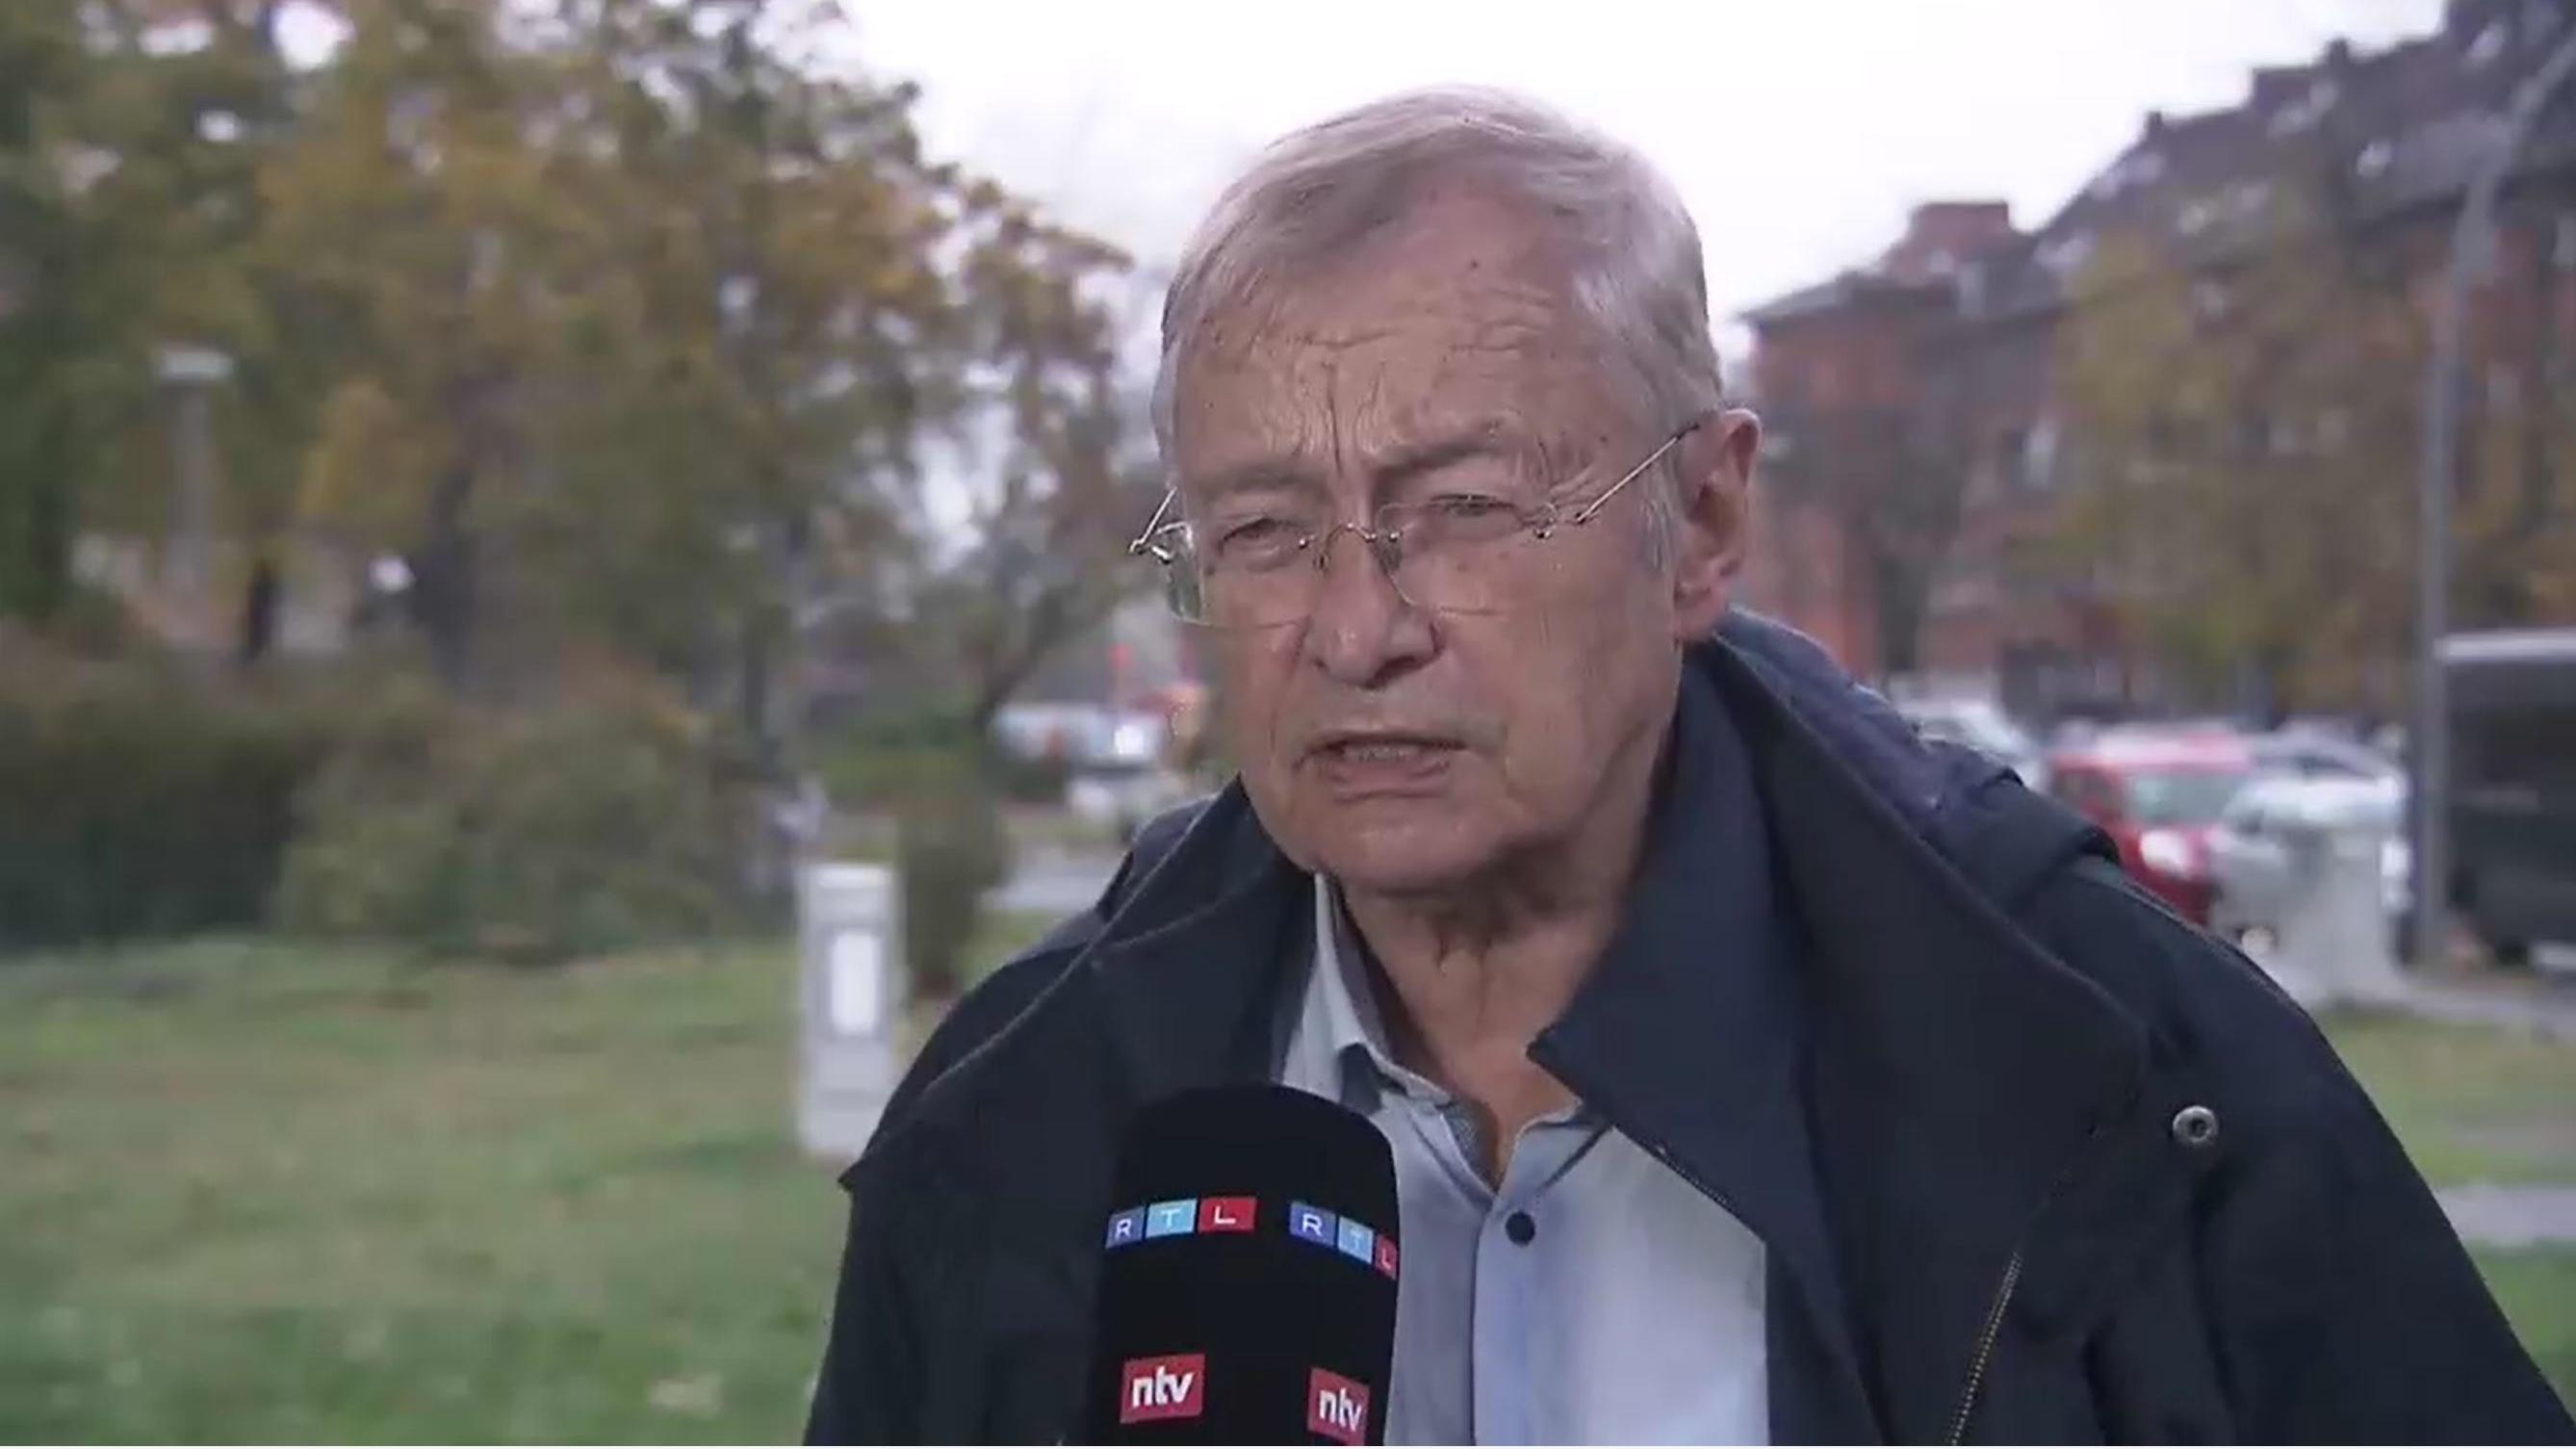 Extremismus-Experte Hajo Funke sprach mit RTL über die Beamten, die Liegestütze auf dem Mahnmal machten.